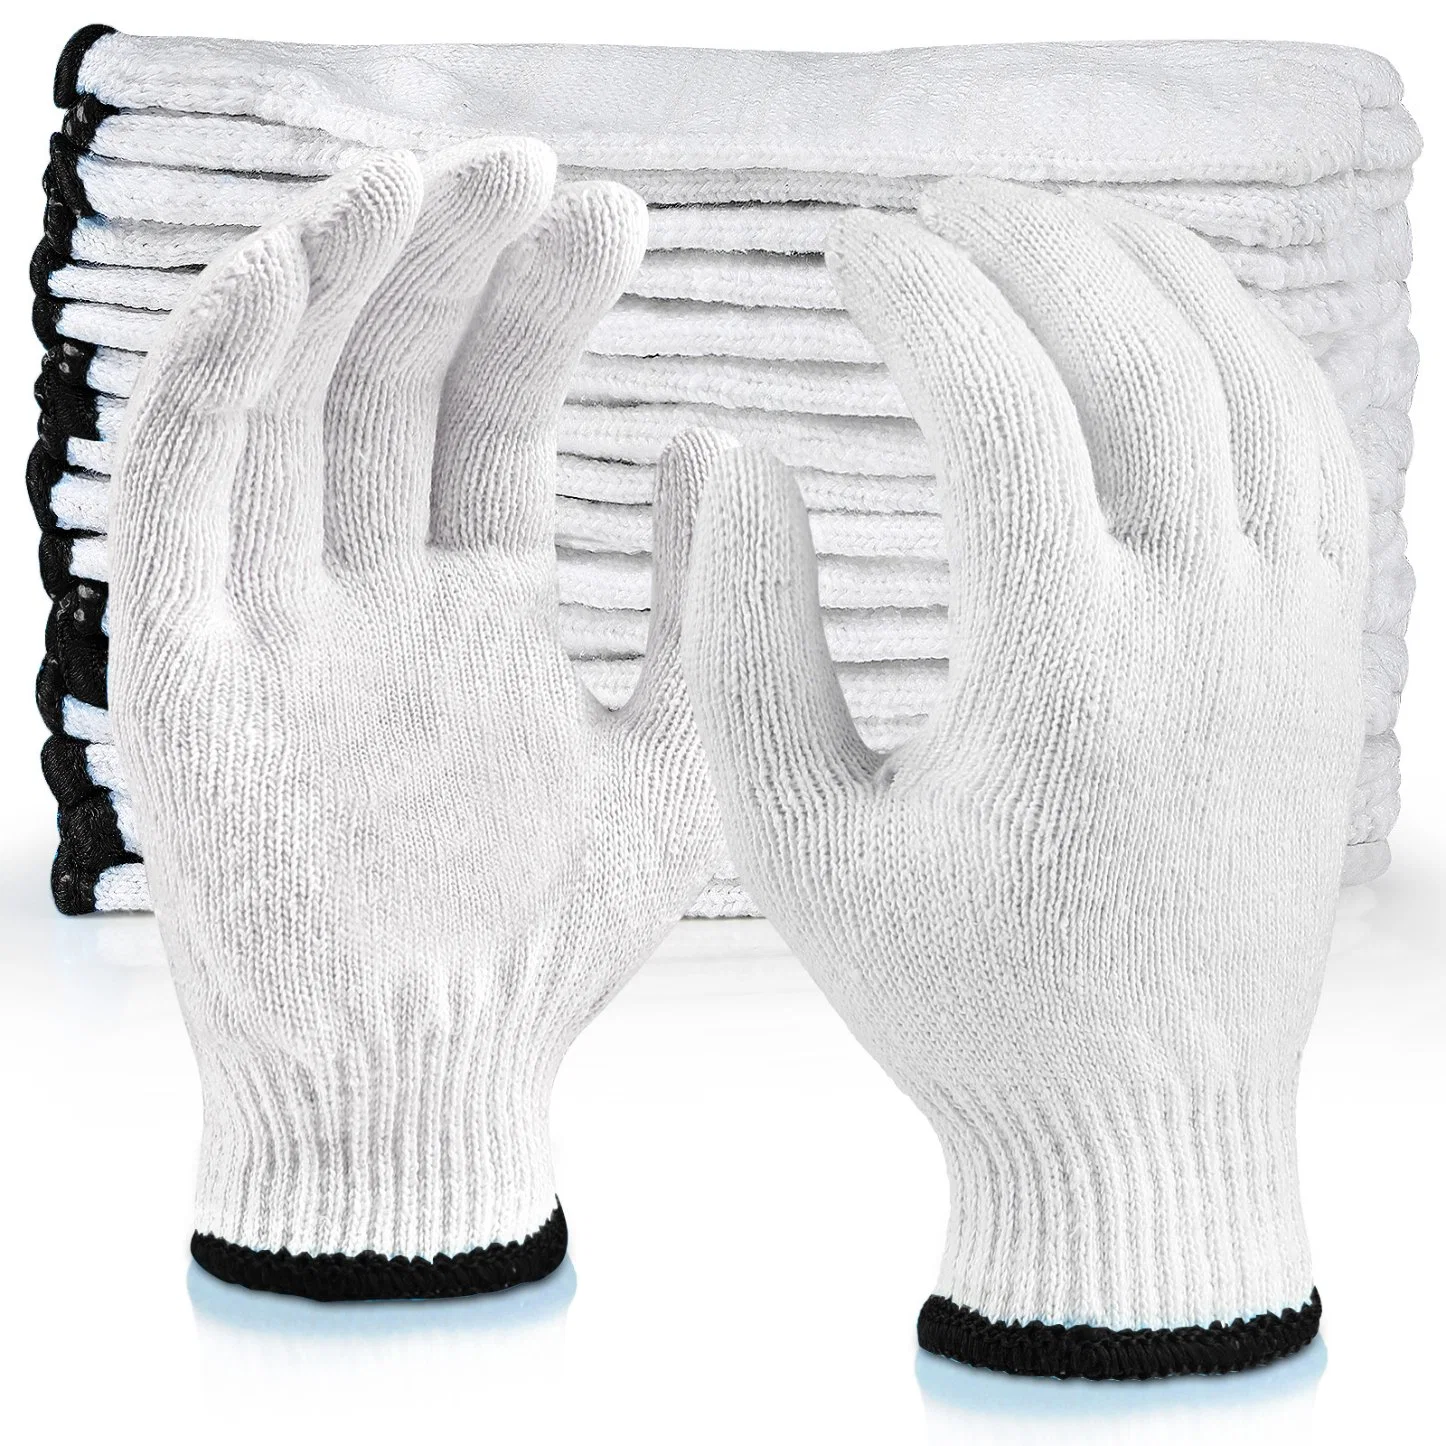 China Großhandel 30-70g/Paar Hand Guantes Sicherheit Arbeitshandschuh Baumwolle gestrickt Handschuhe